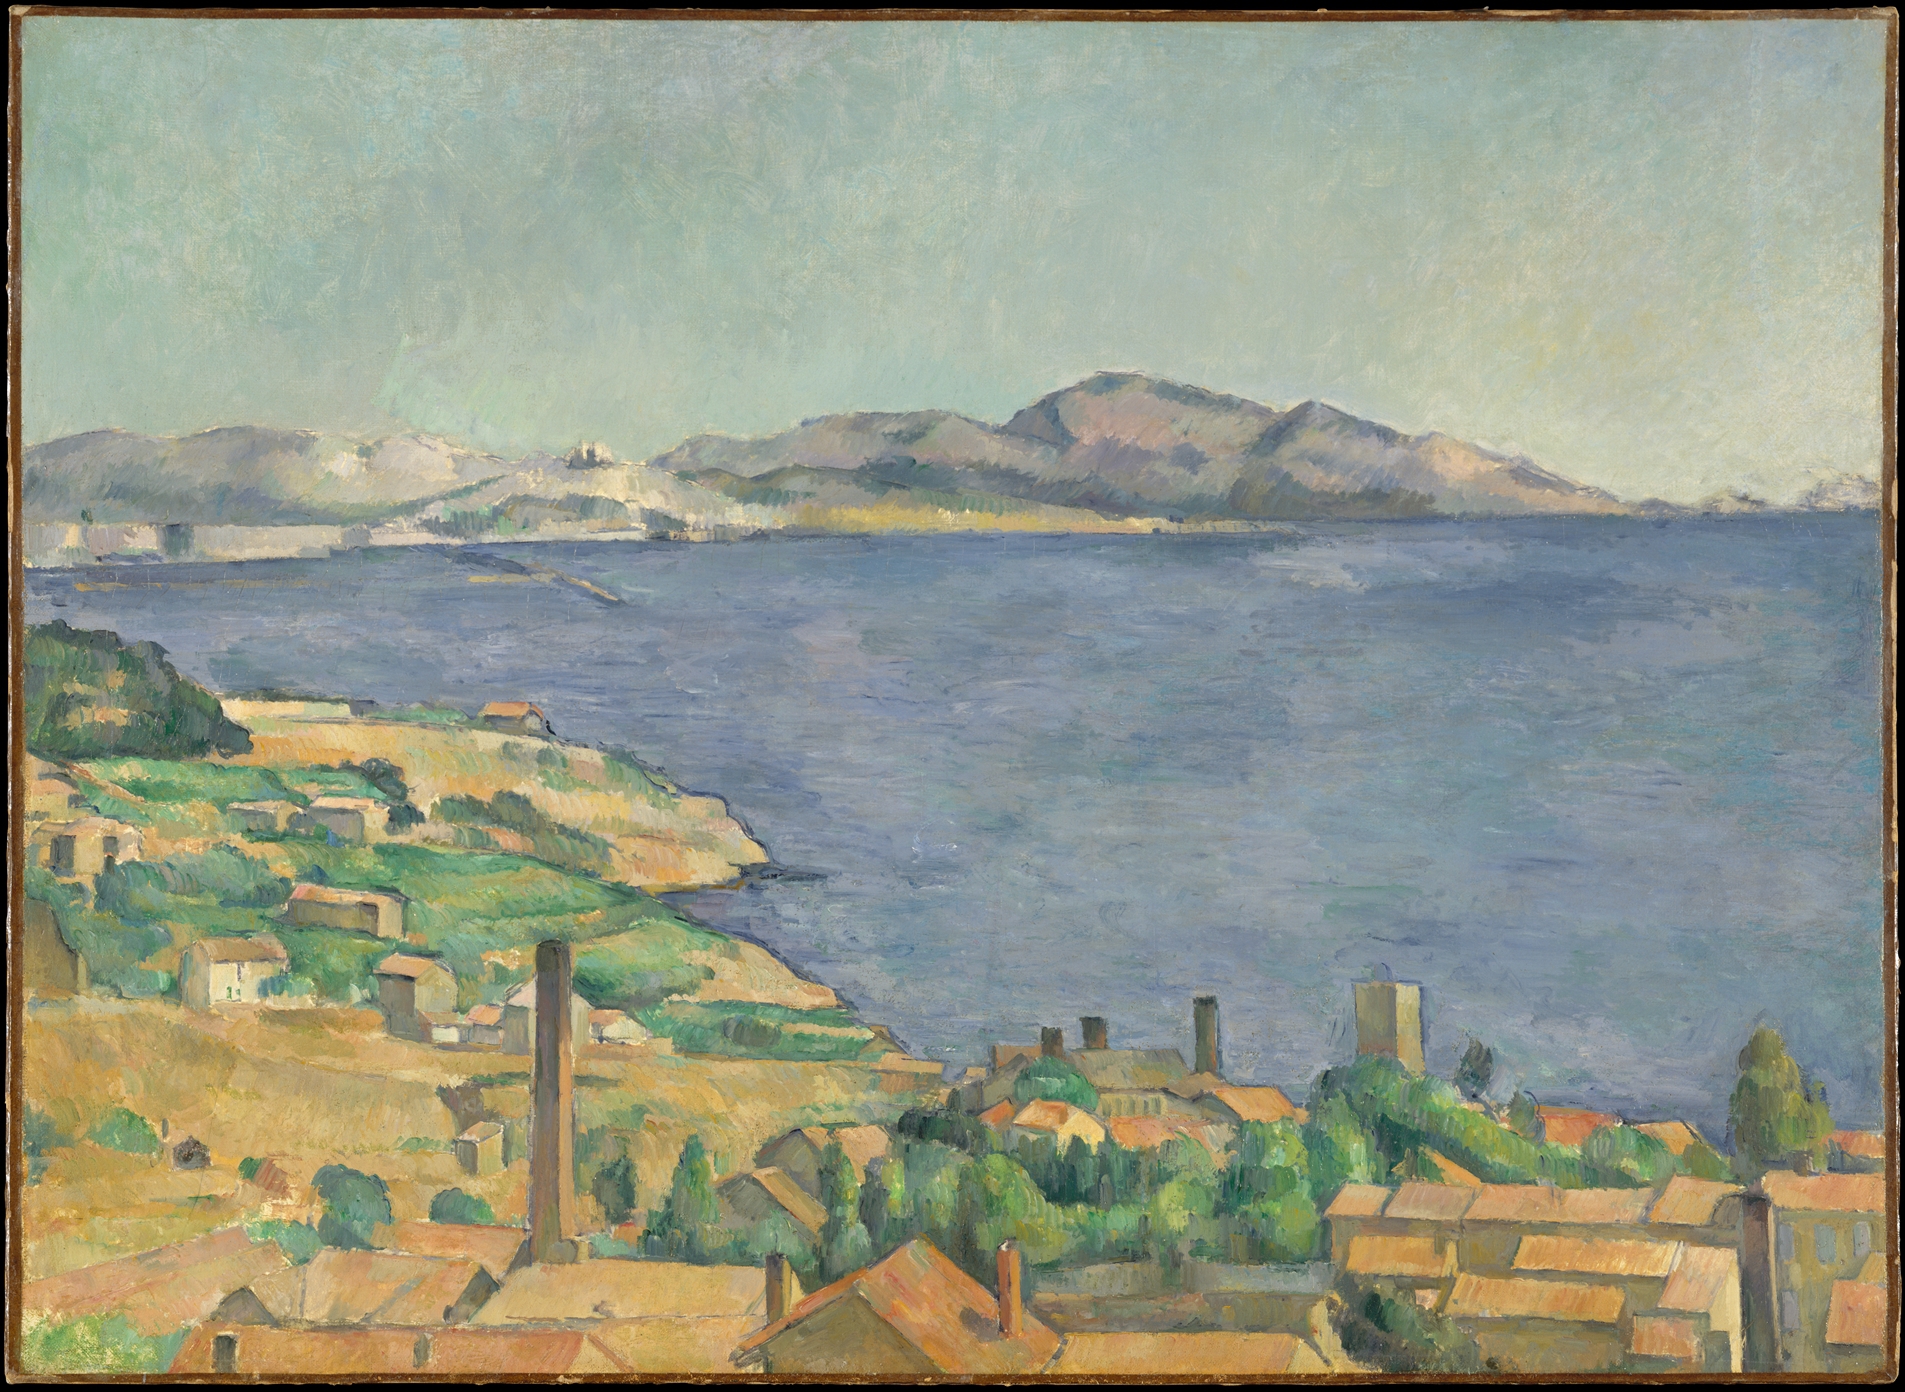 Le golfe de Marseille vu de l'Estaque by Paul Cézanne - Vers 1885 - 73 x 100.3 cm Metropolitan Museum of Art